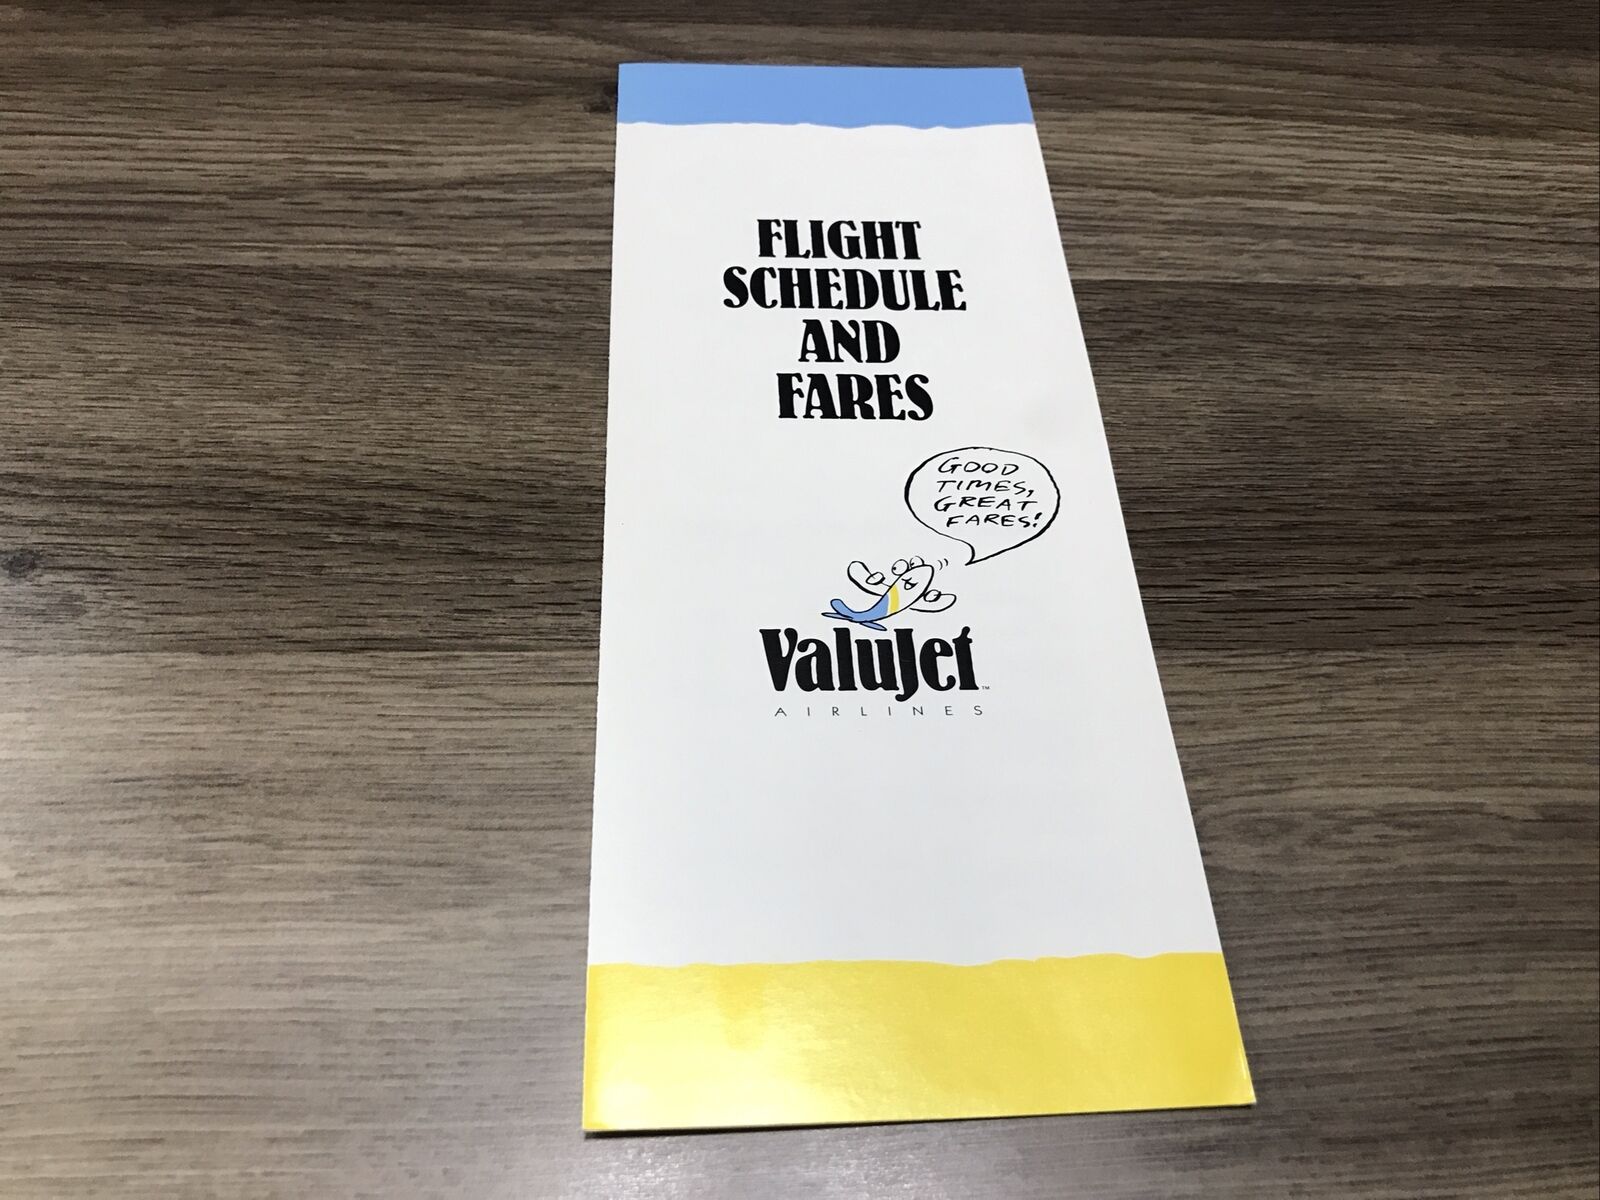 Valujet Airlines Flight Schedule Oct 26, 1993